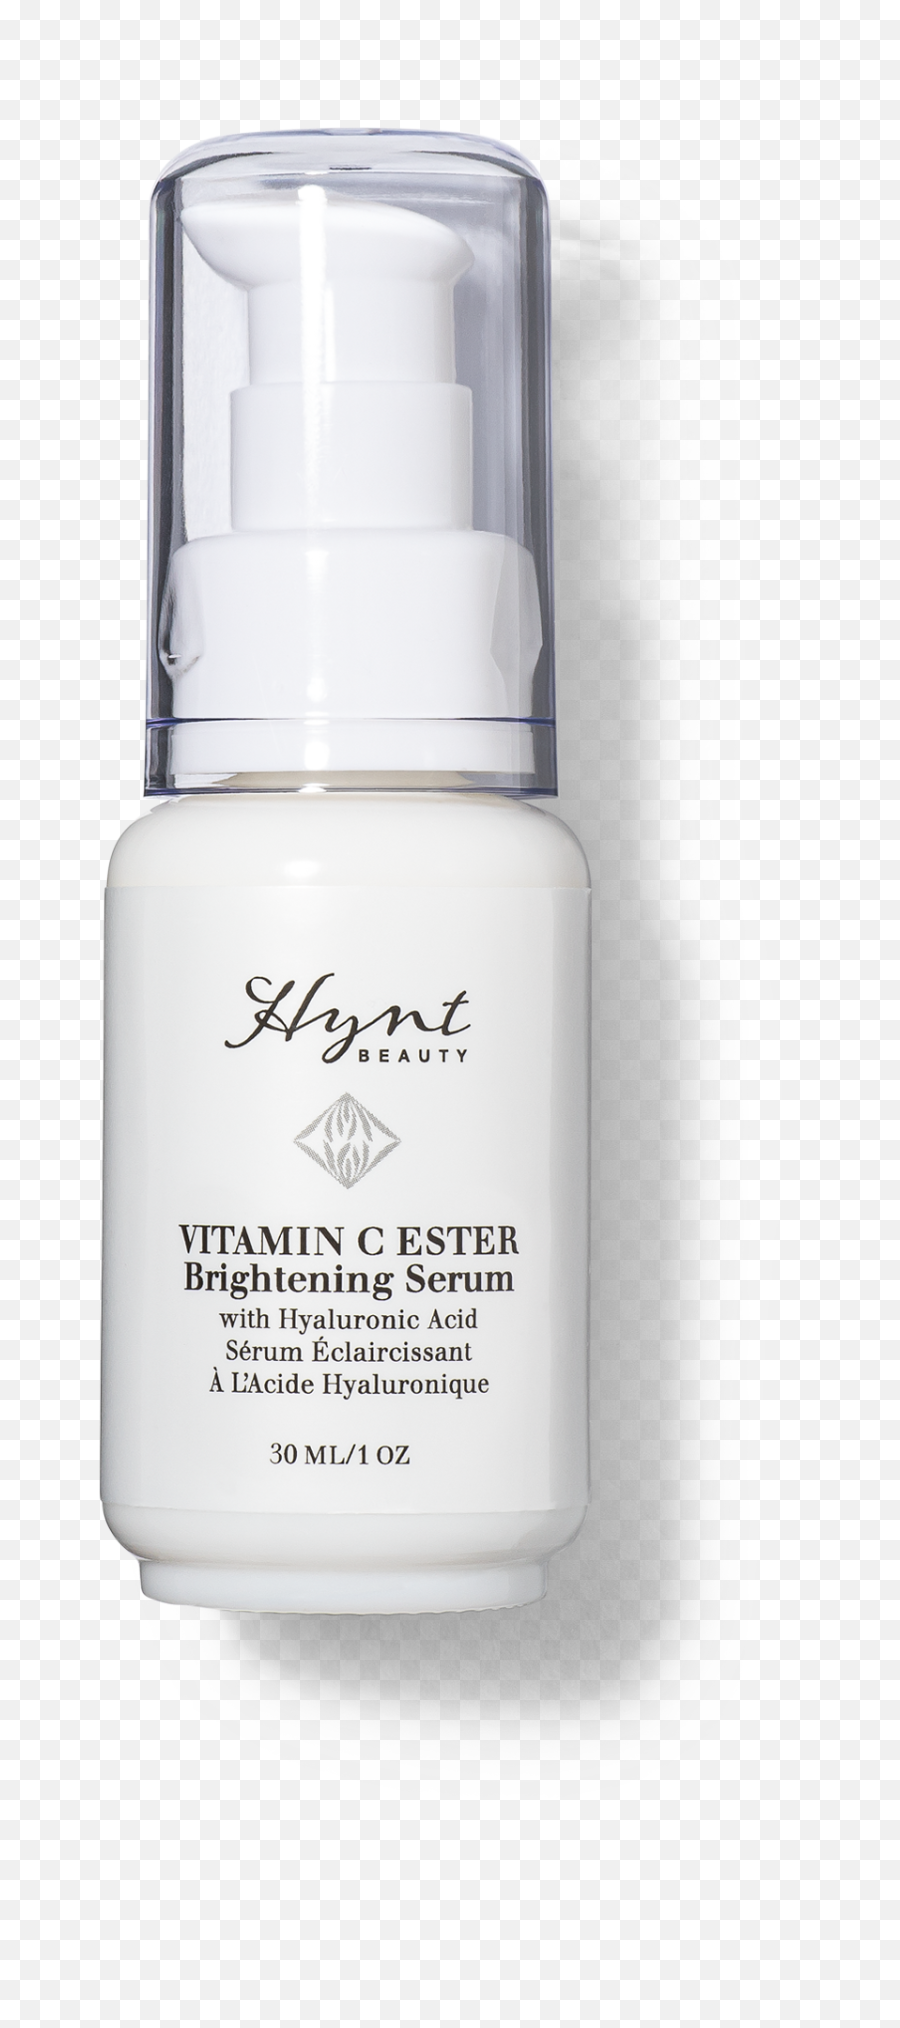 Vitamin C Ester Brightening Serum - Skin Care Png,Tc Icon 243